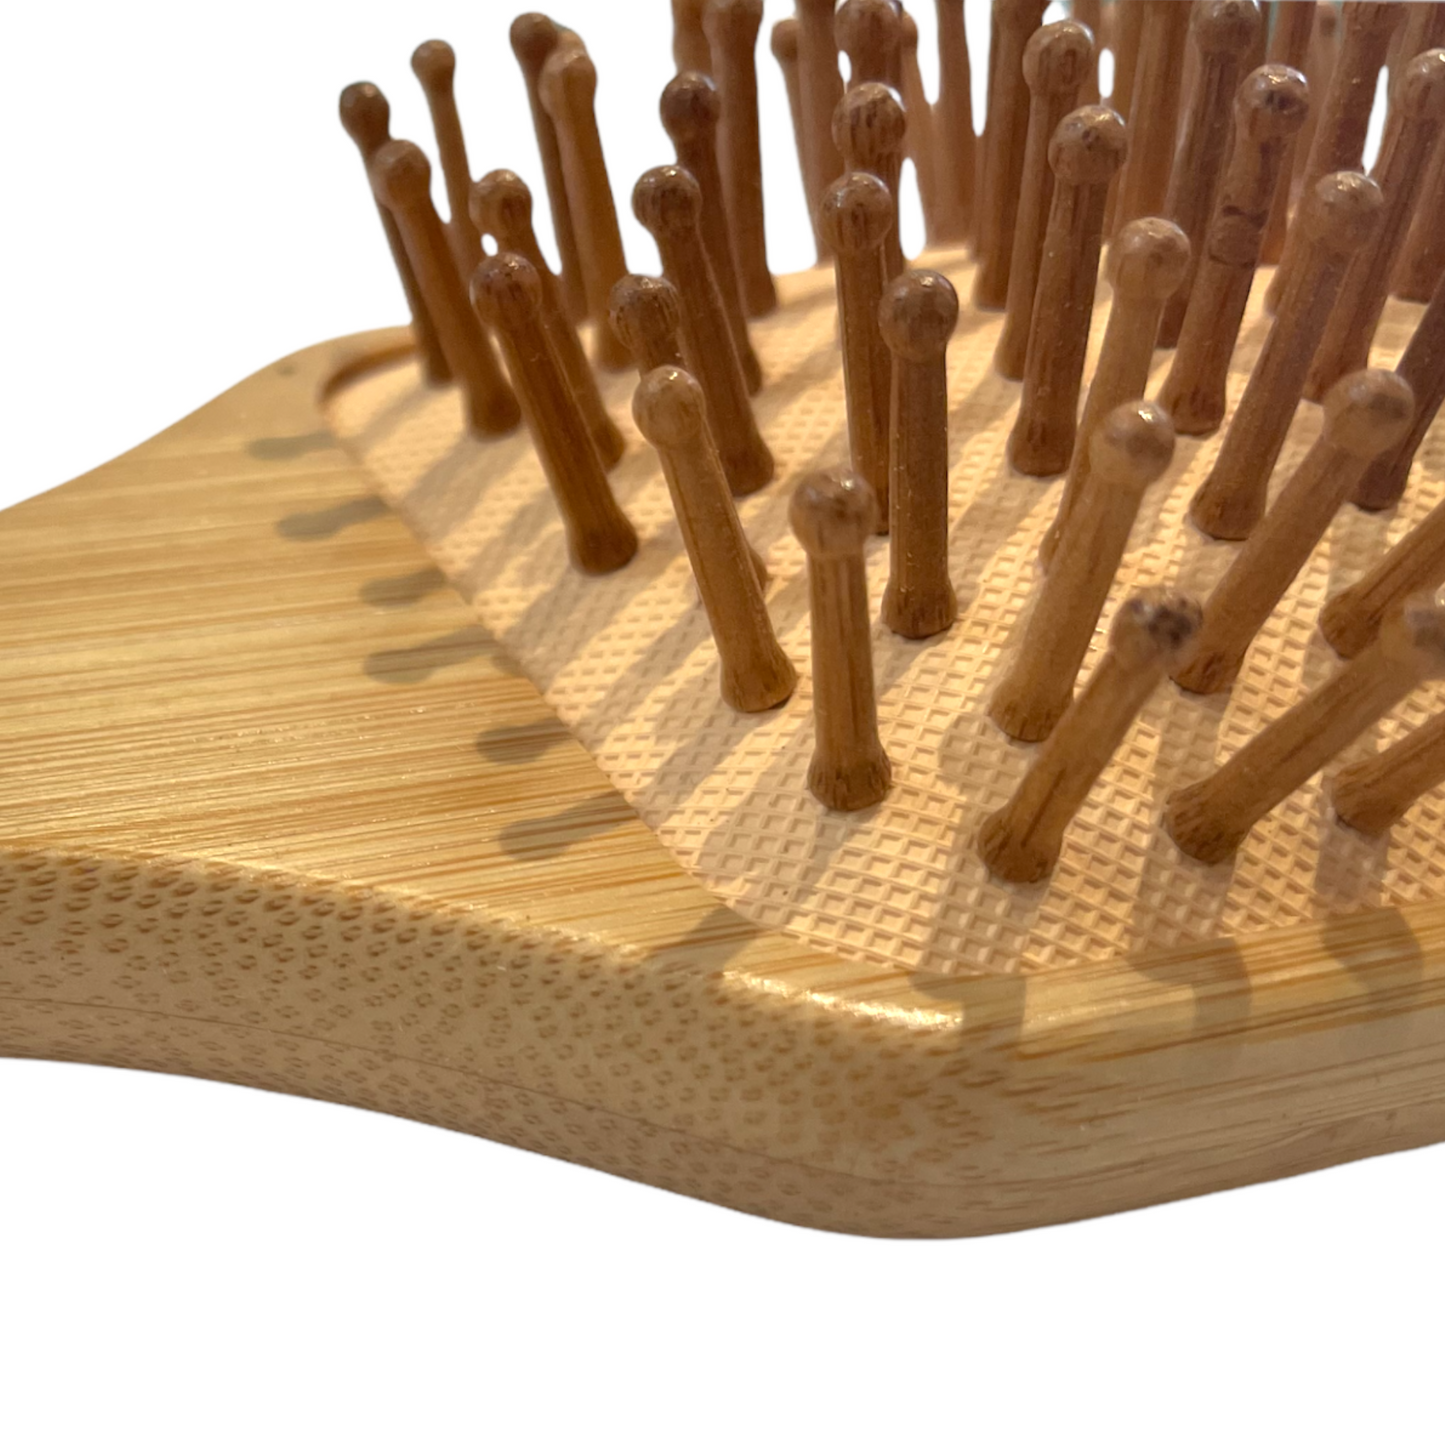 Cepillo para el pelo | Paleta de bambú